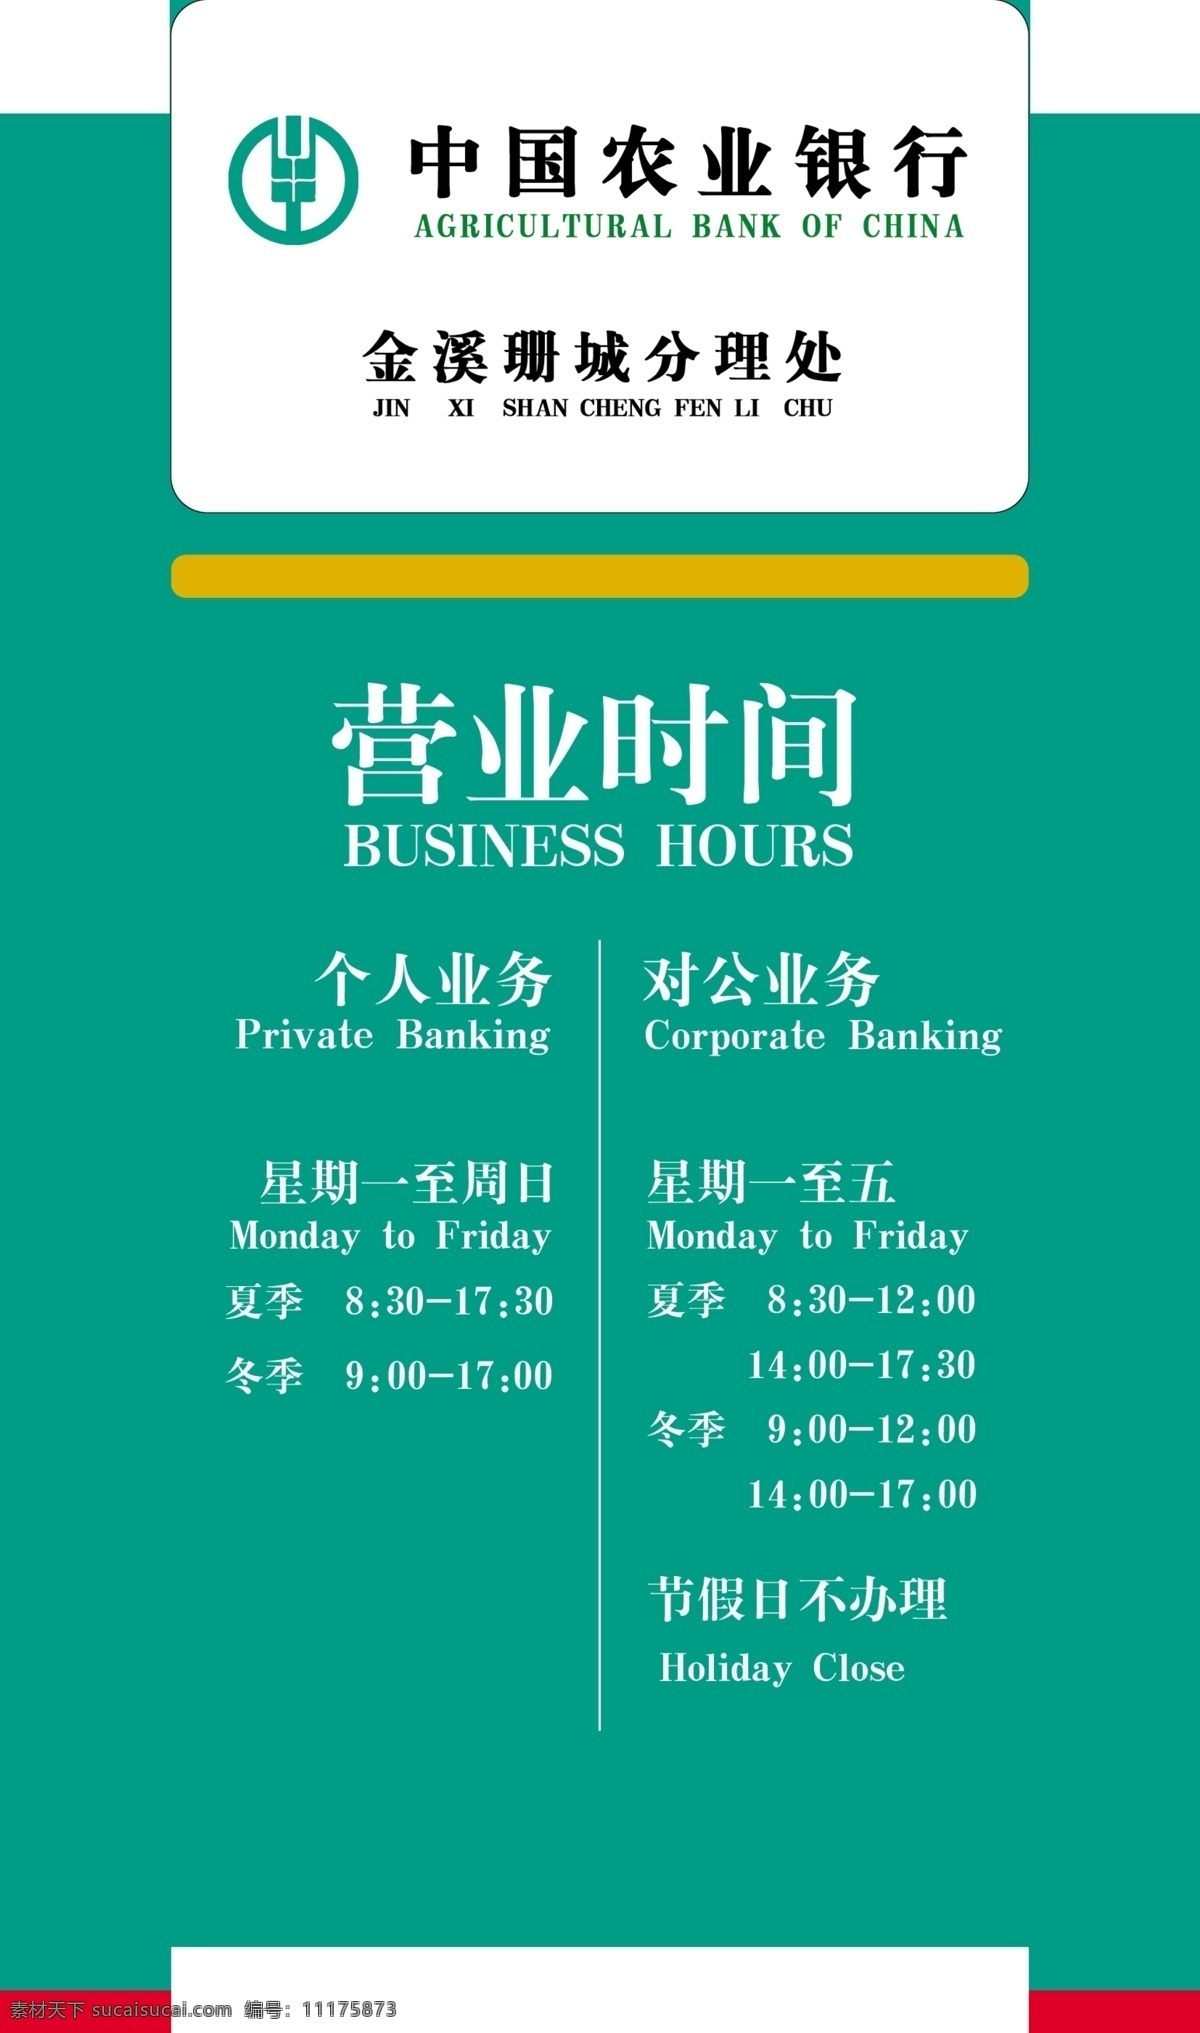 中国农业银行 营业 时间表 农业银行标志 标准色绿底 psd格式 分层 源文件